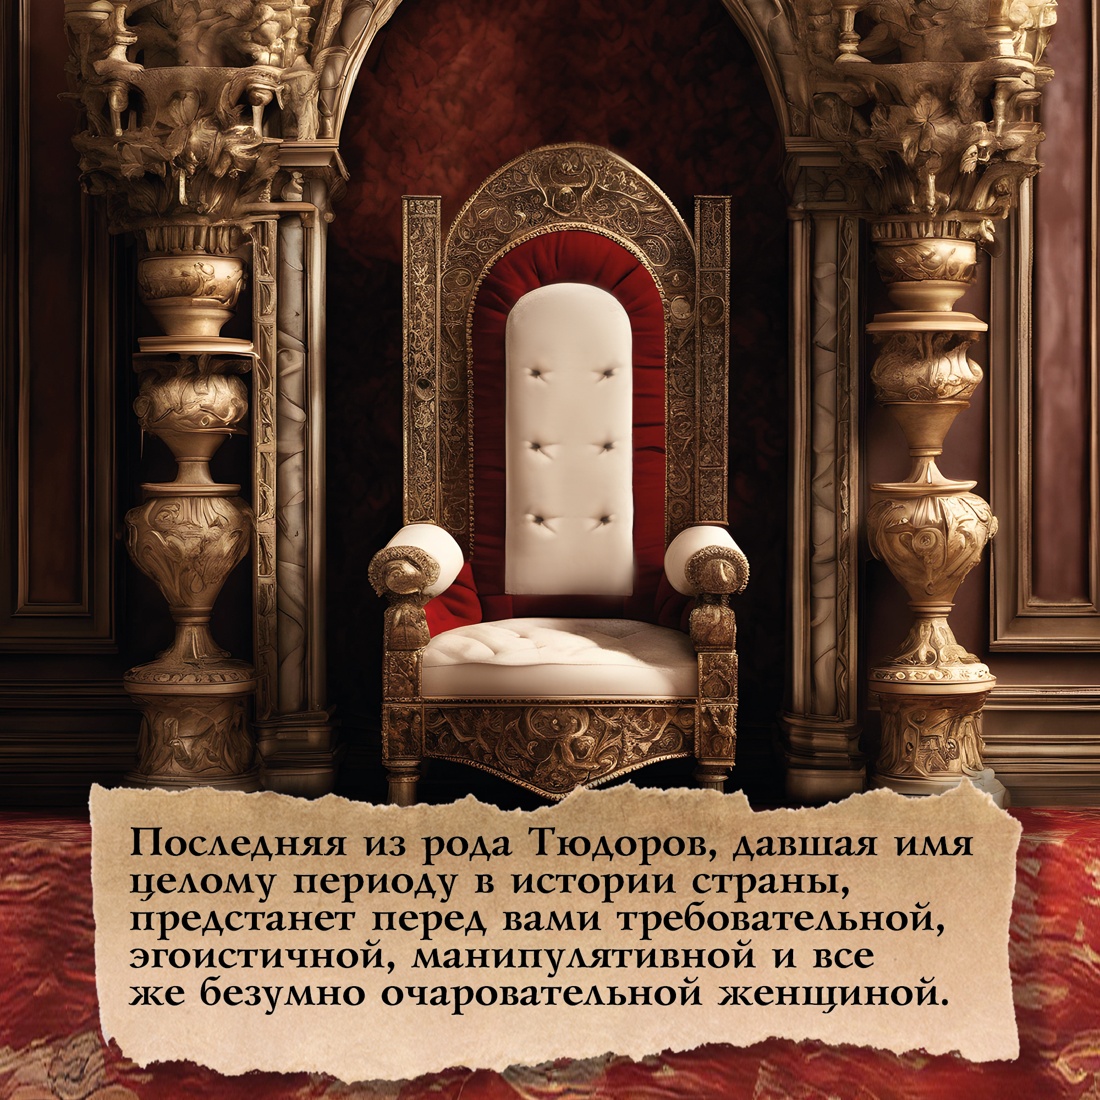 Промо материал к книге "Елизавета I. Брачная игра" №4